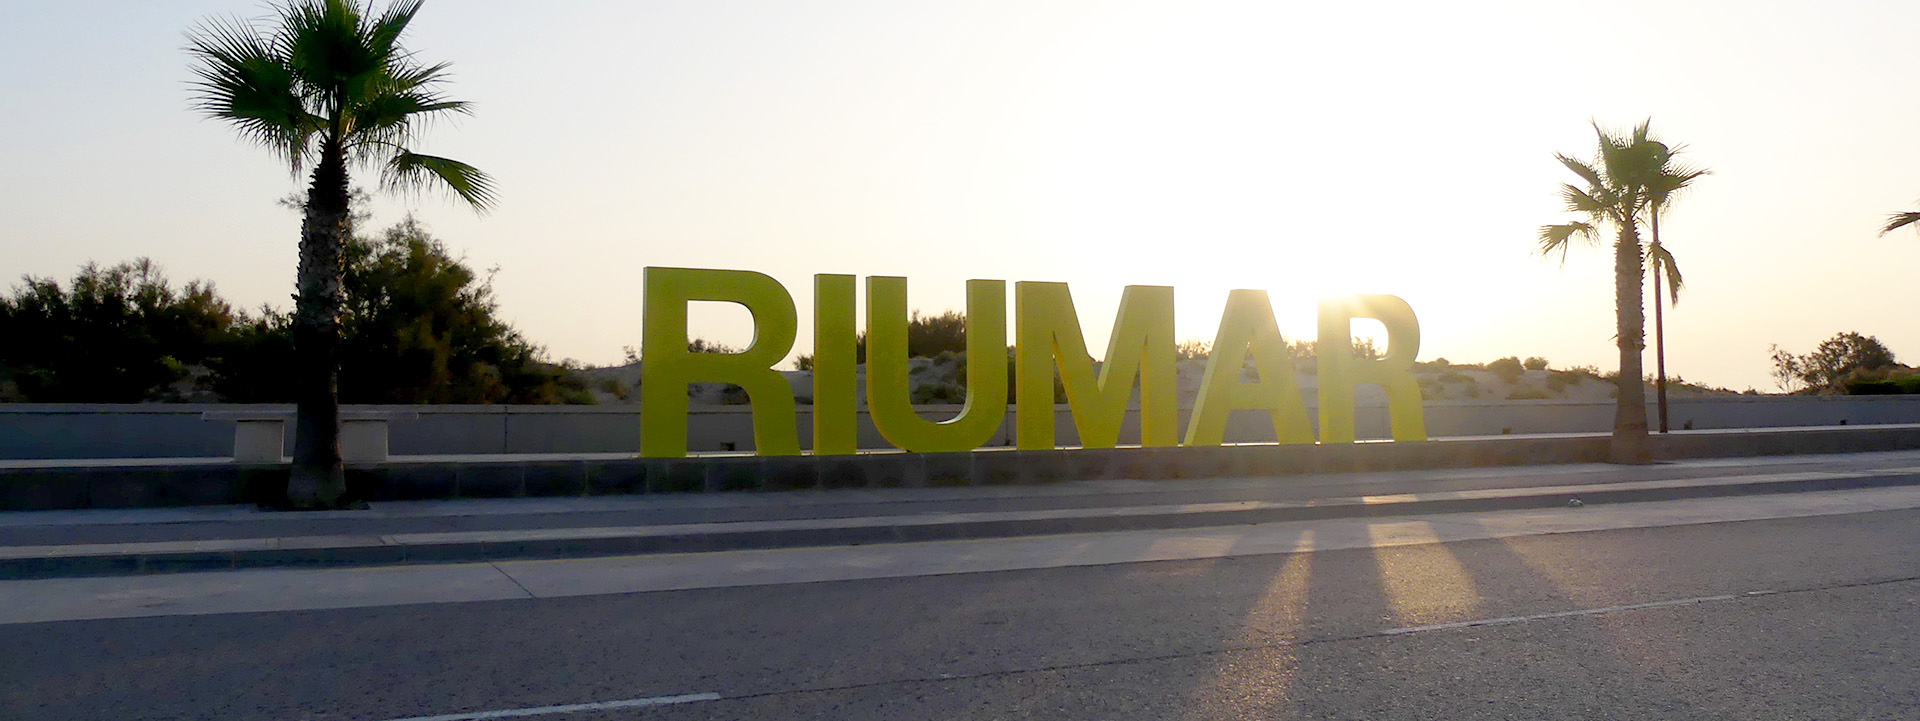 Ein Schriftzug mit dem Namen der Stadt Riumar steht zwischen Palmen.